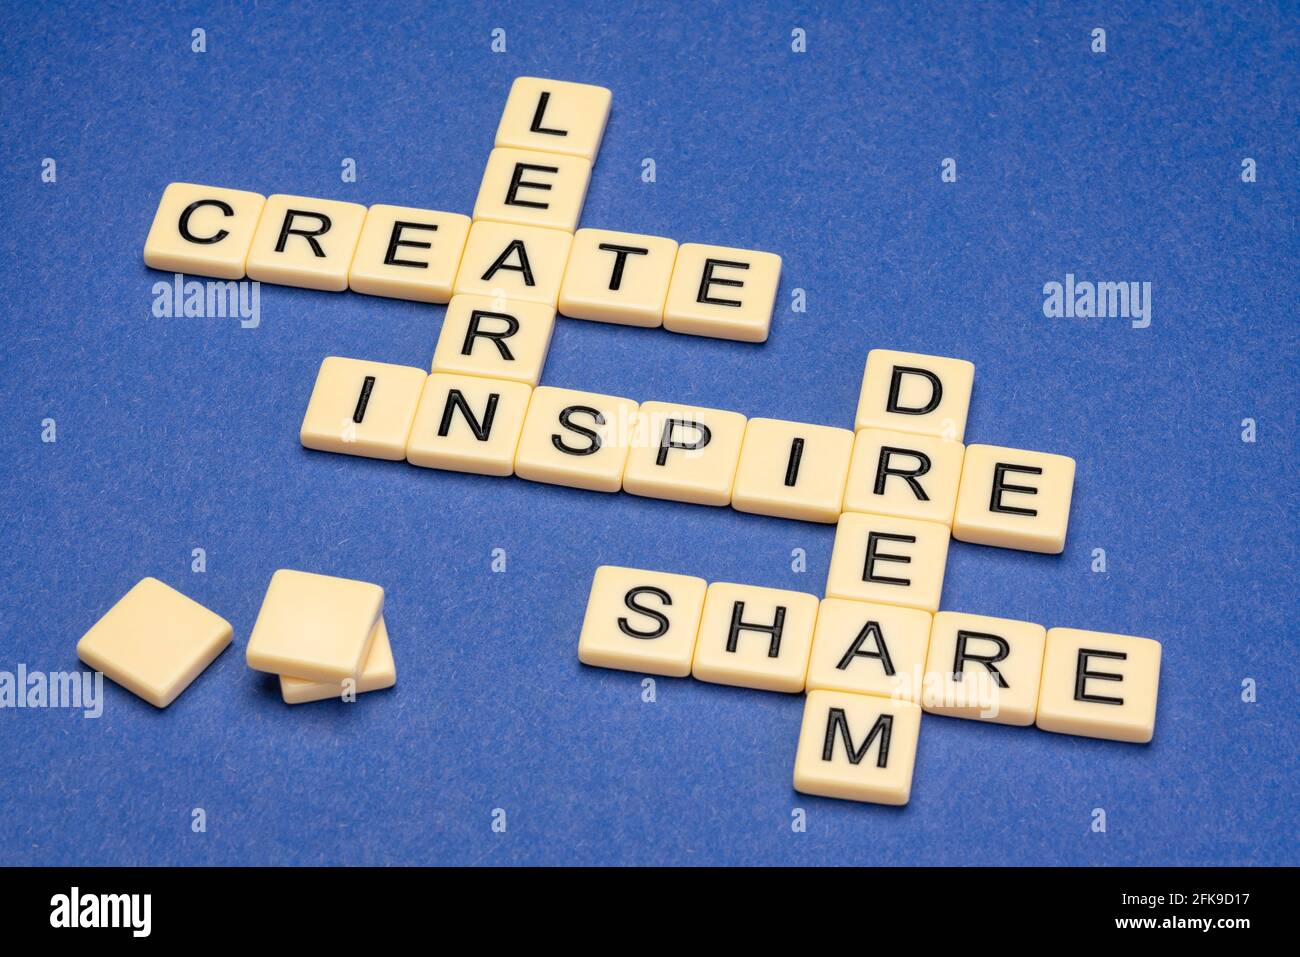 rêvez, apprenez, créez, partagez et inspirez des mots croisés en lettres ivoire contre le papier texturé, l'apprentissage, la créativité, le réseautage et le concept de travail d'équipe Banque D'Images